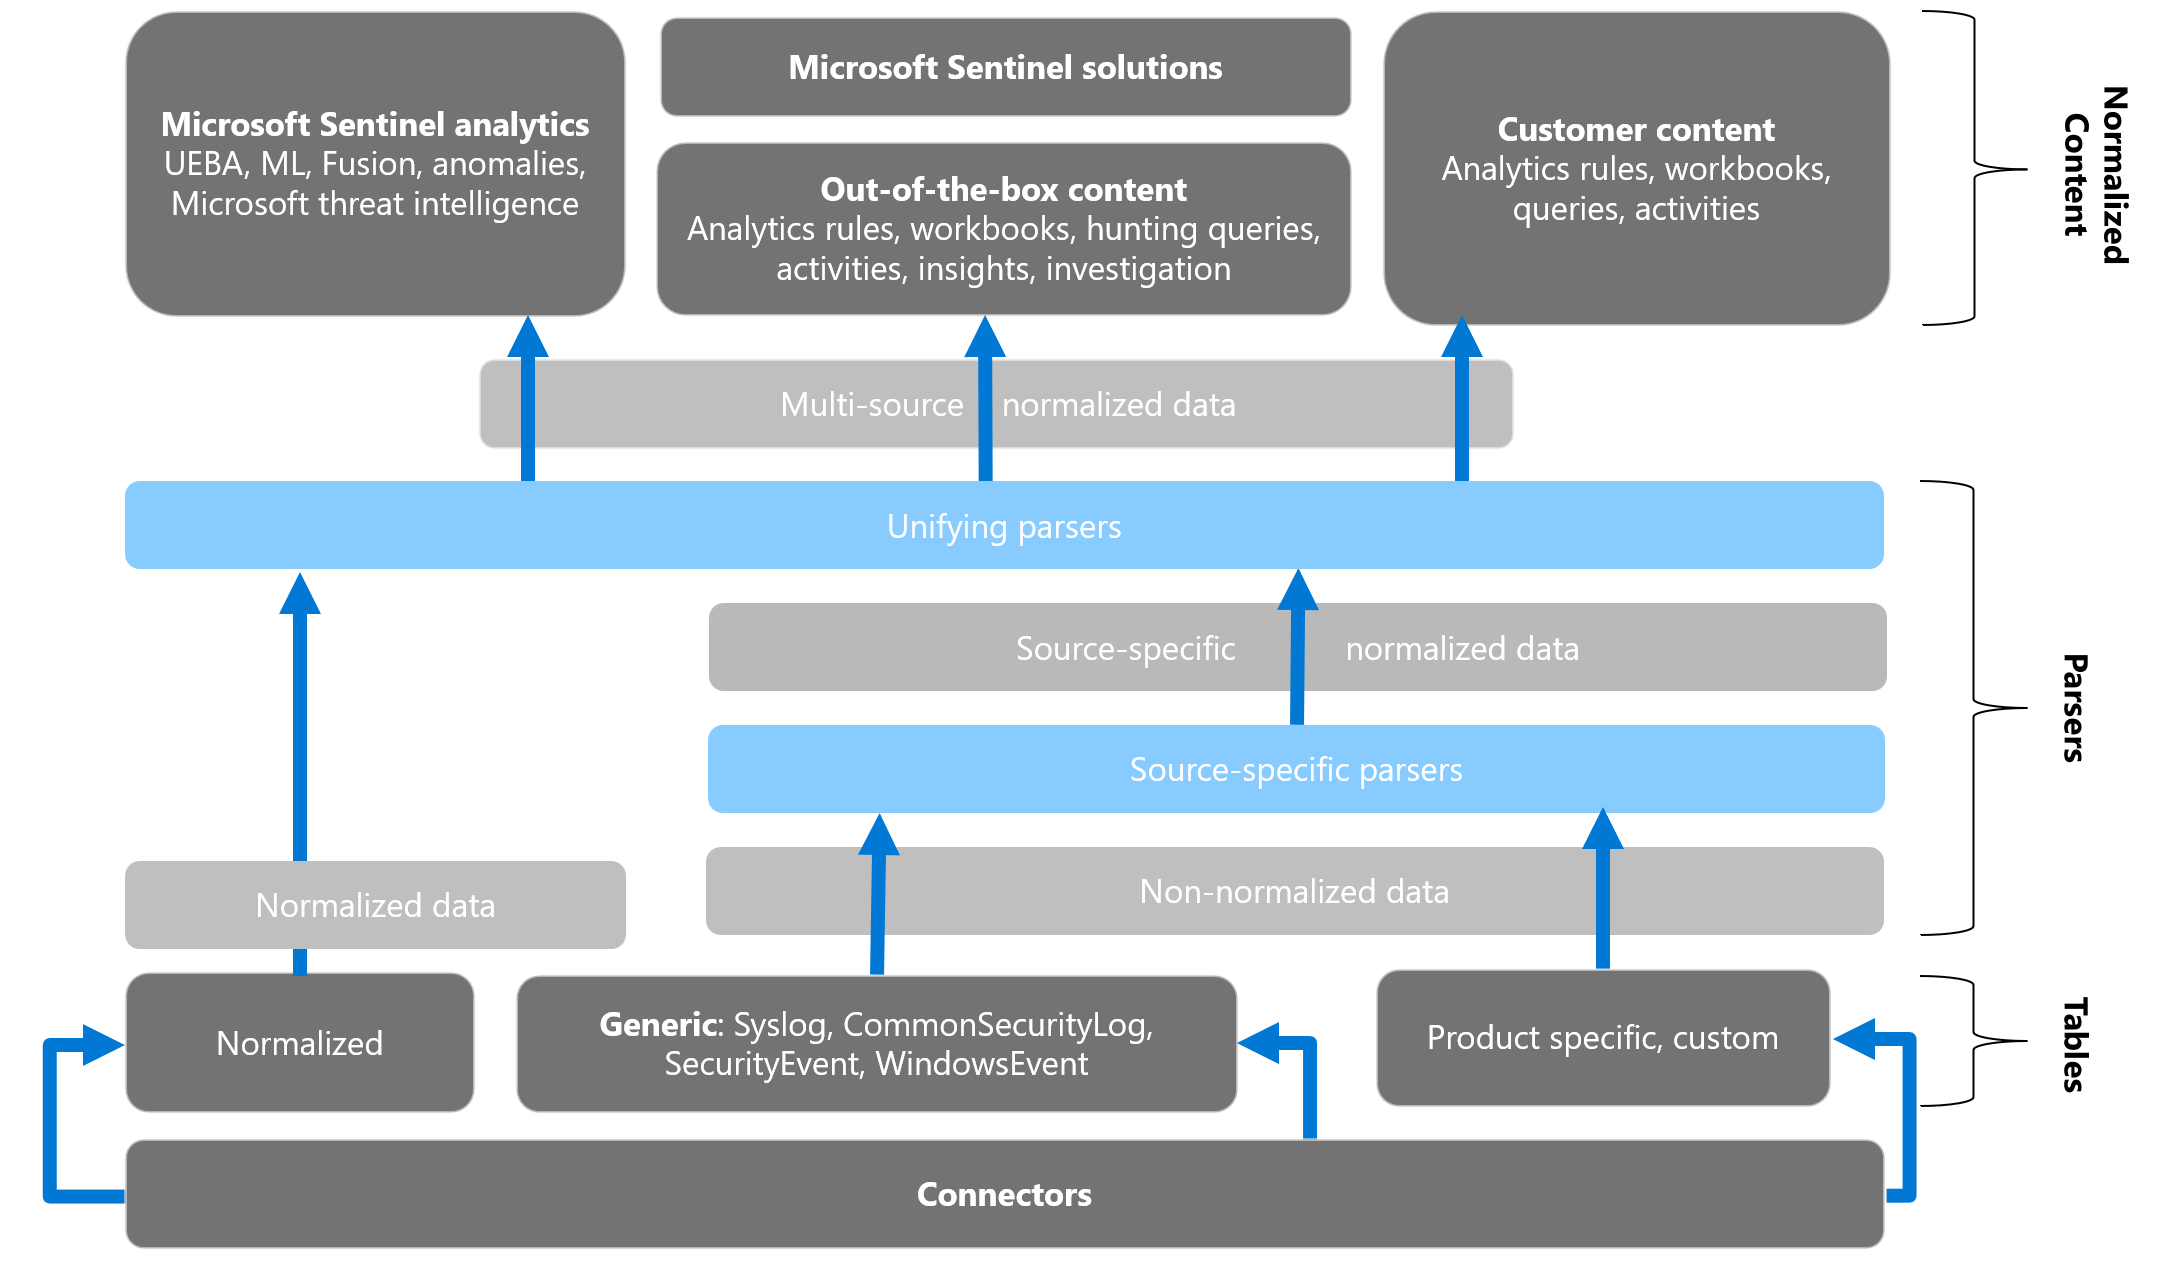 Flujo de conversión de datos no normalizados en normalizados y uso de estos datos en Microsoft Sentinel